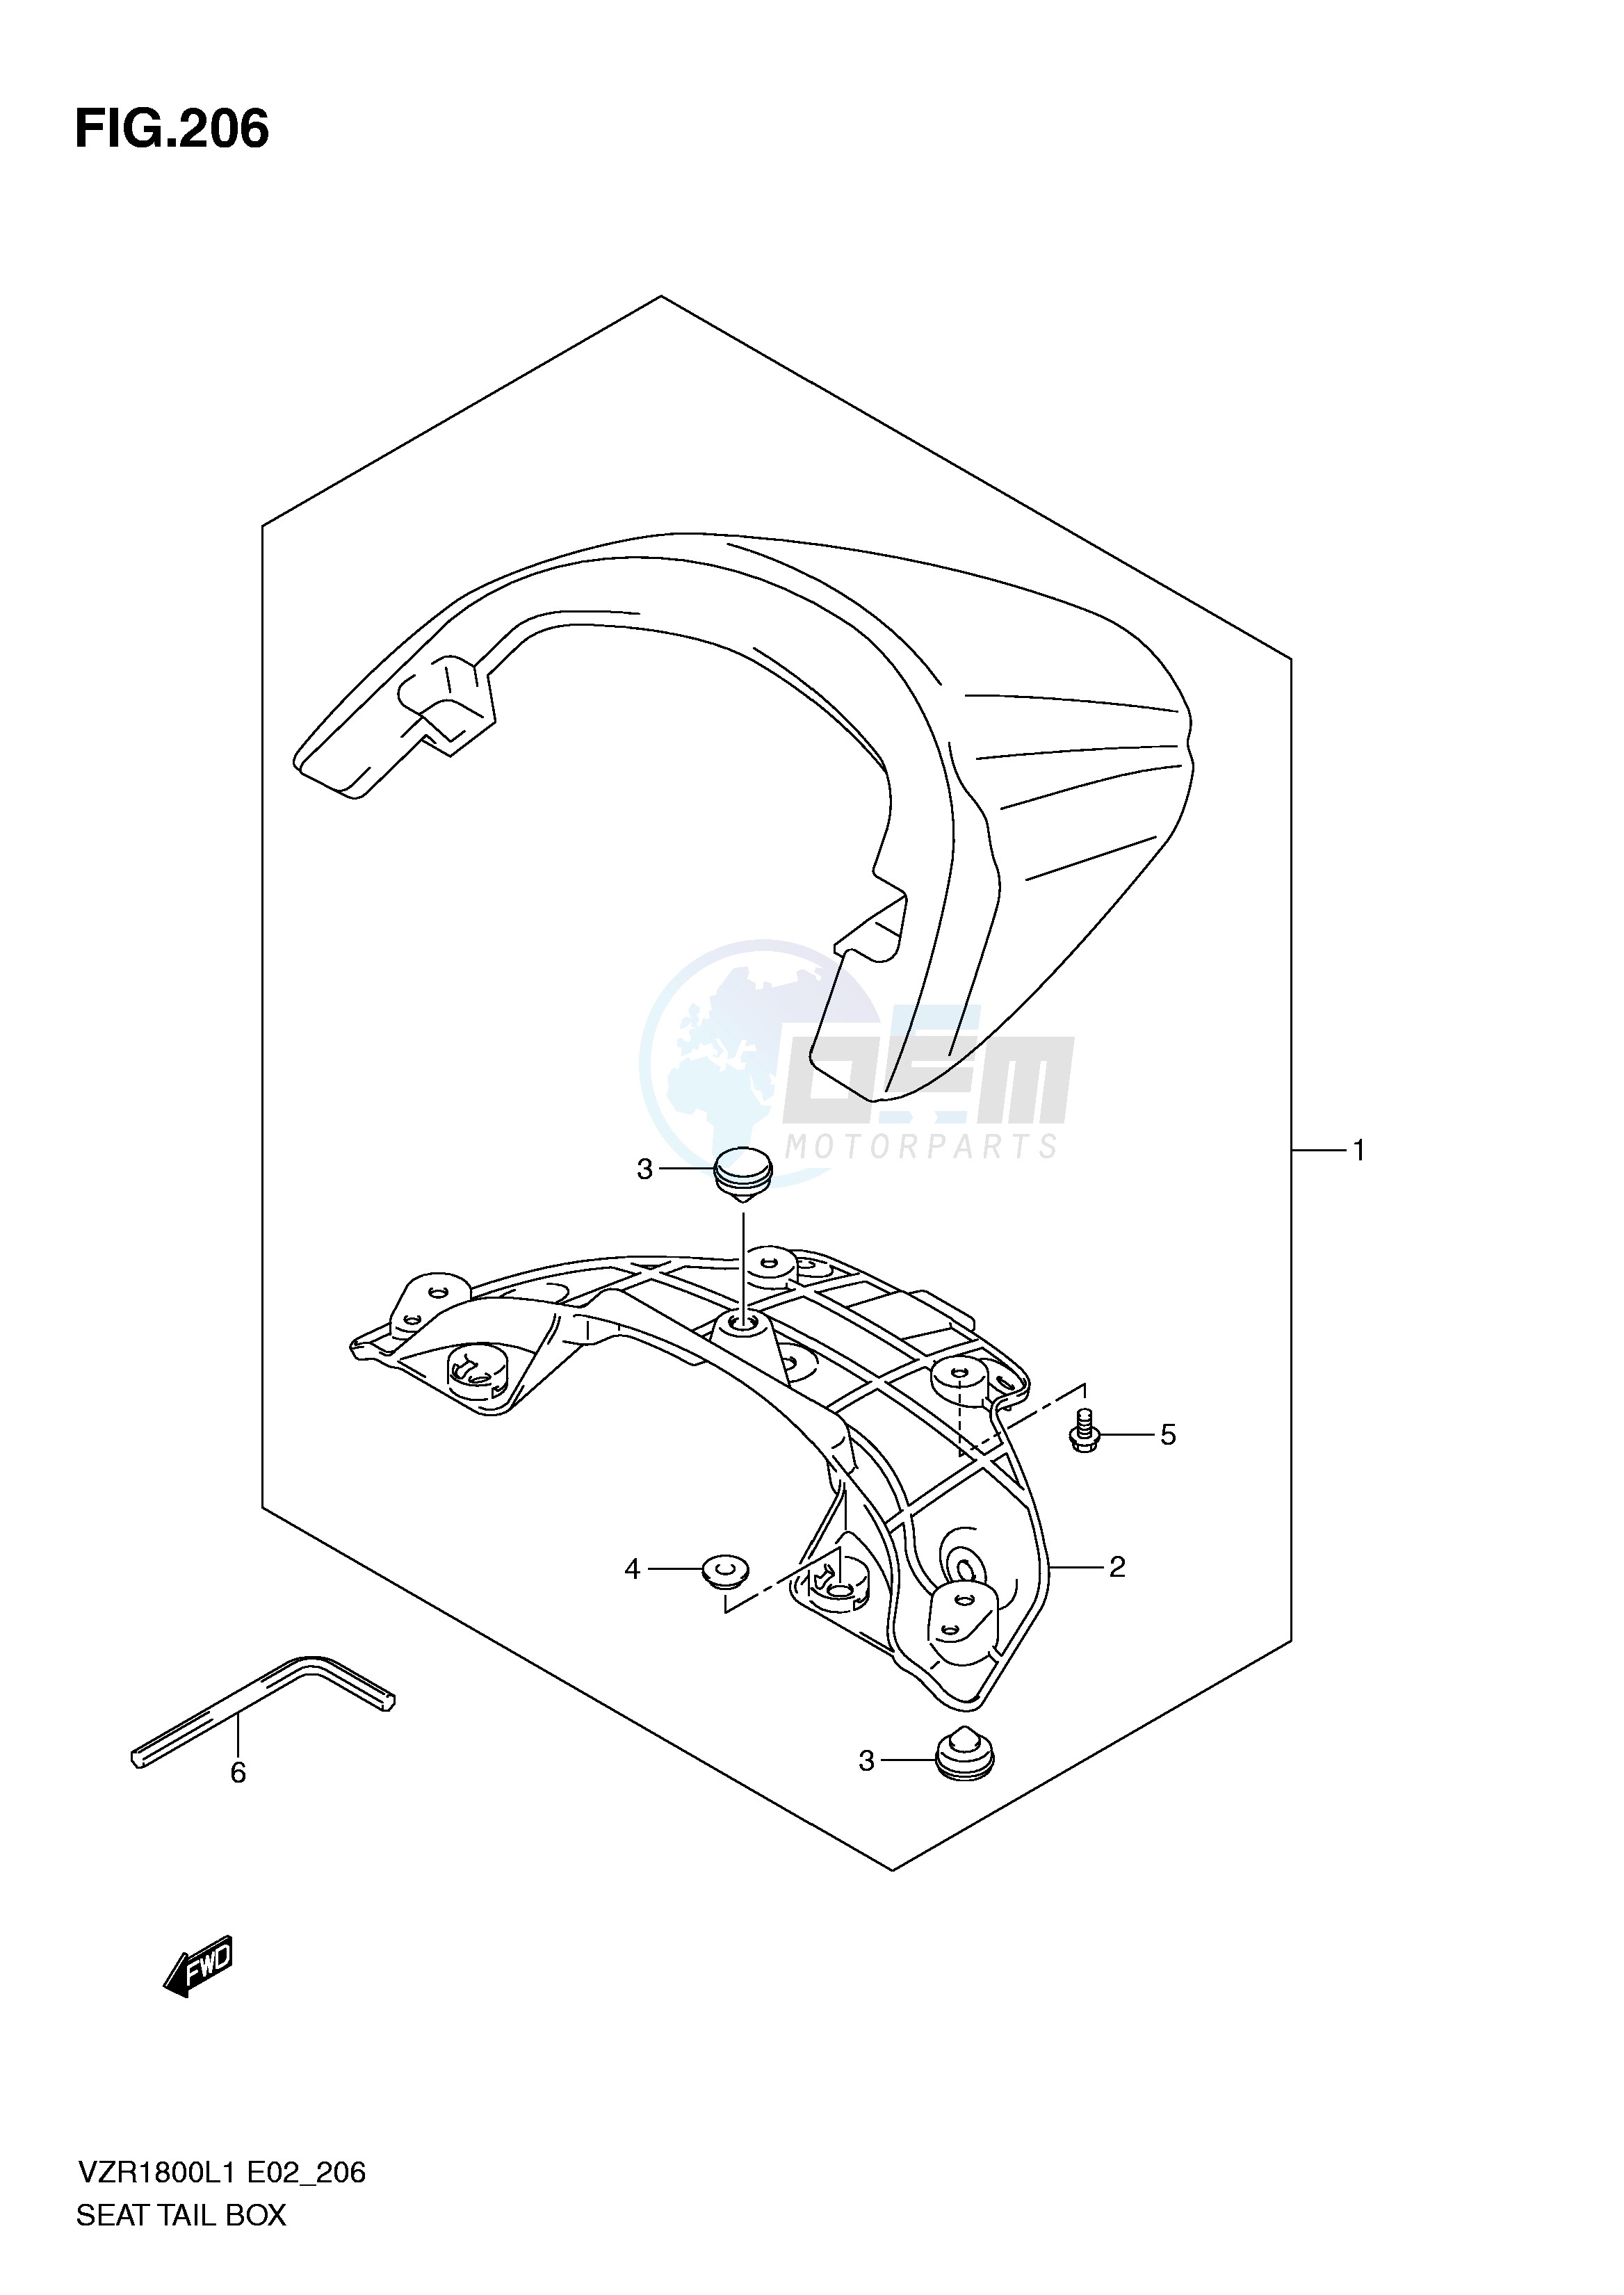 SEAT TAIL BOX (VZR1800ZL1 E19) blueprint